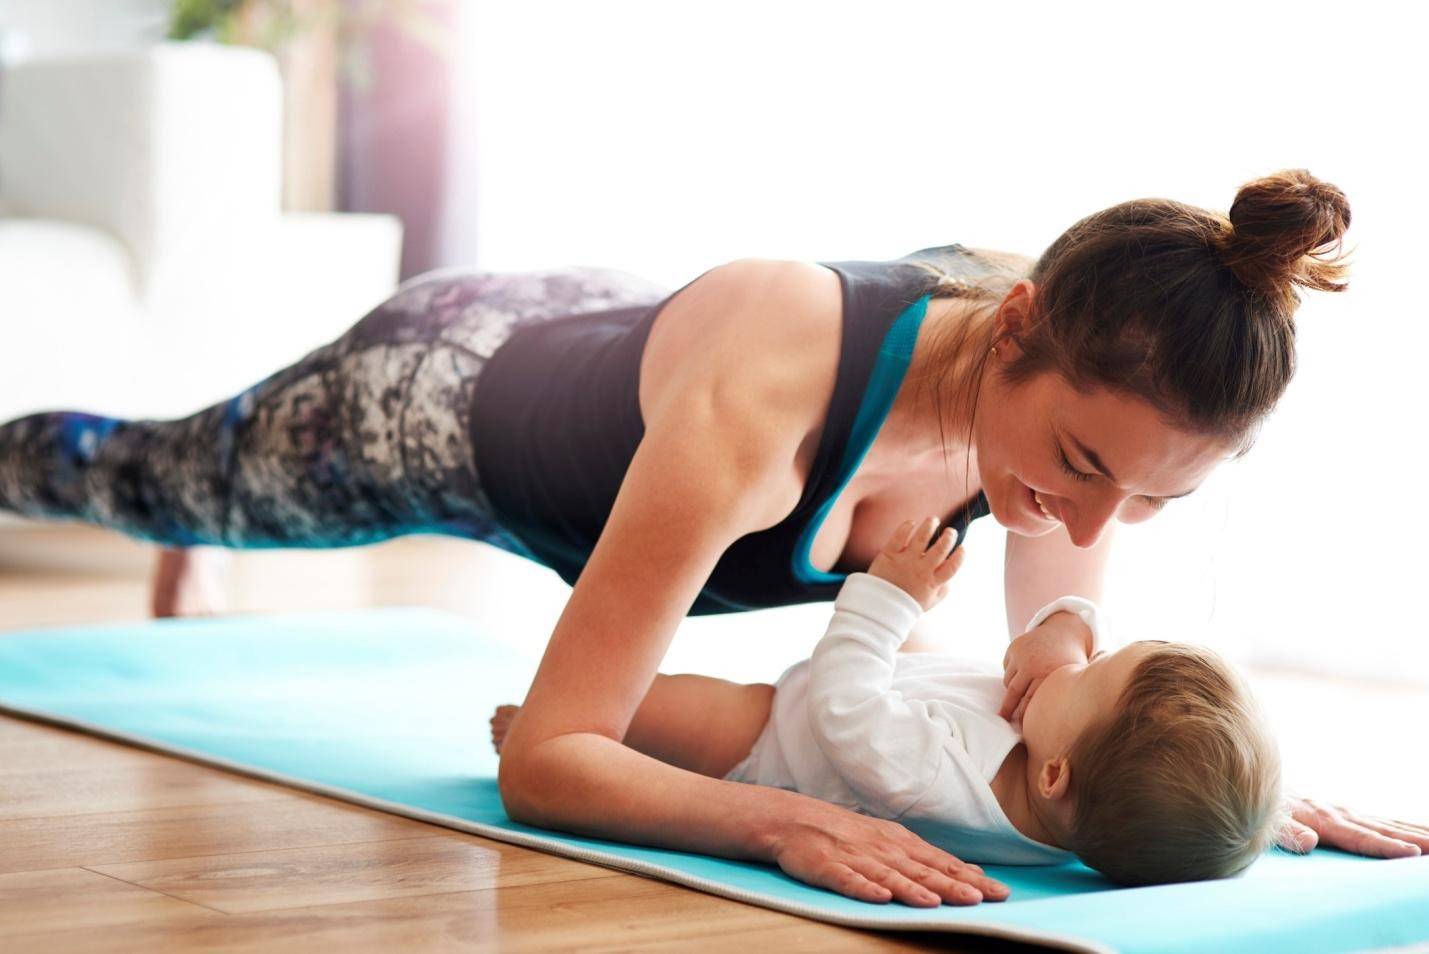 Упражнения после родов: гимнастика для похудения в домашних условиях, тренировки по восстановлению